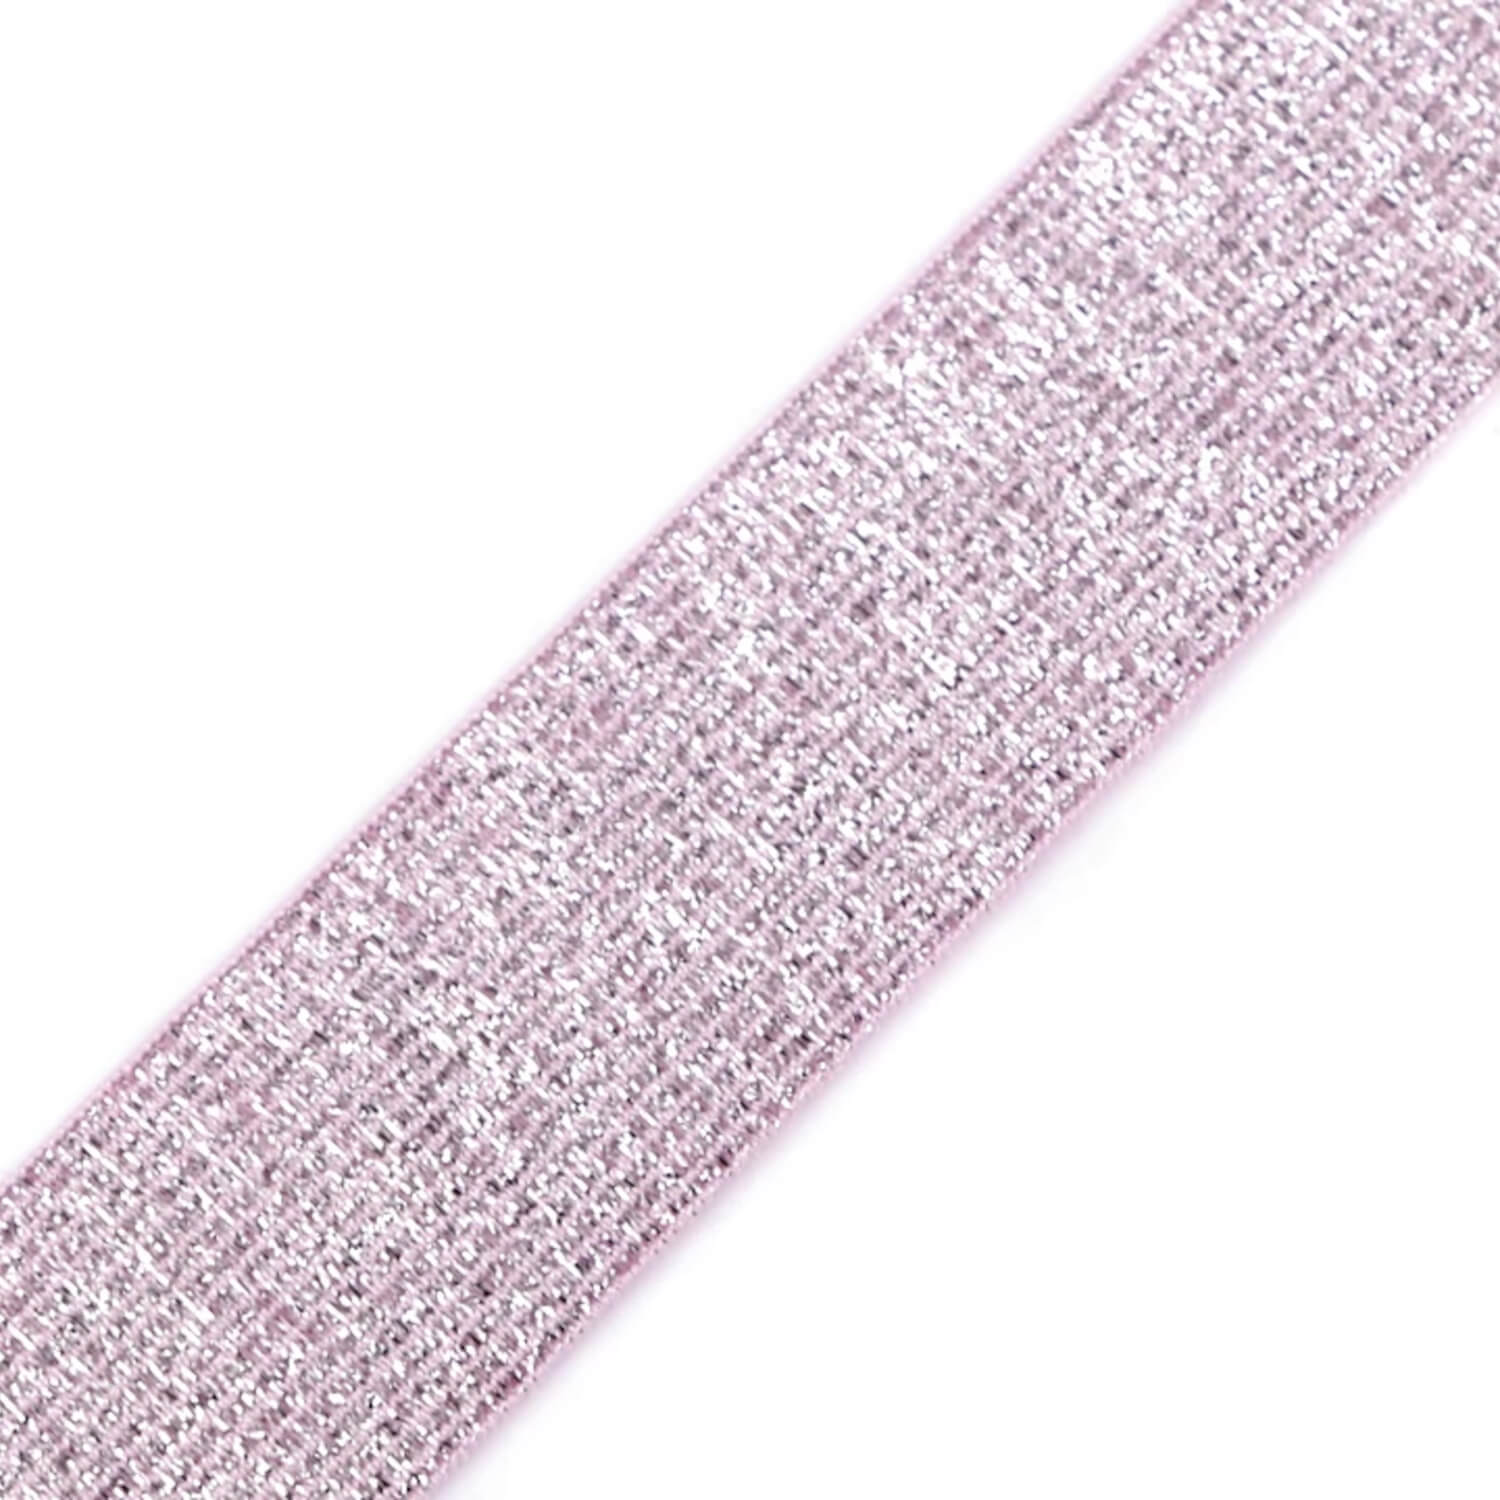 1 Meter Gummiband - 27mm breit - mit Lurex - Farbe: hellrosa-silber